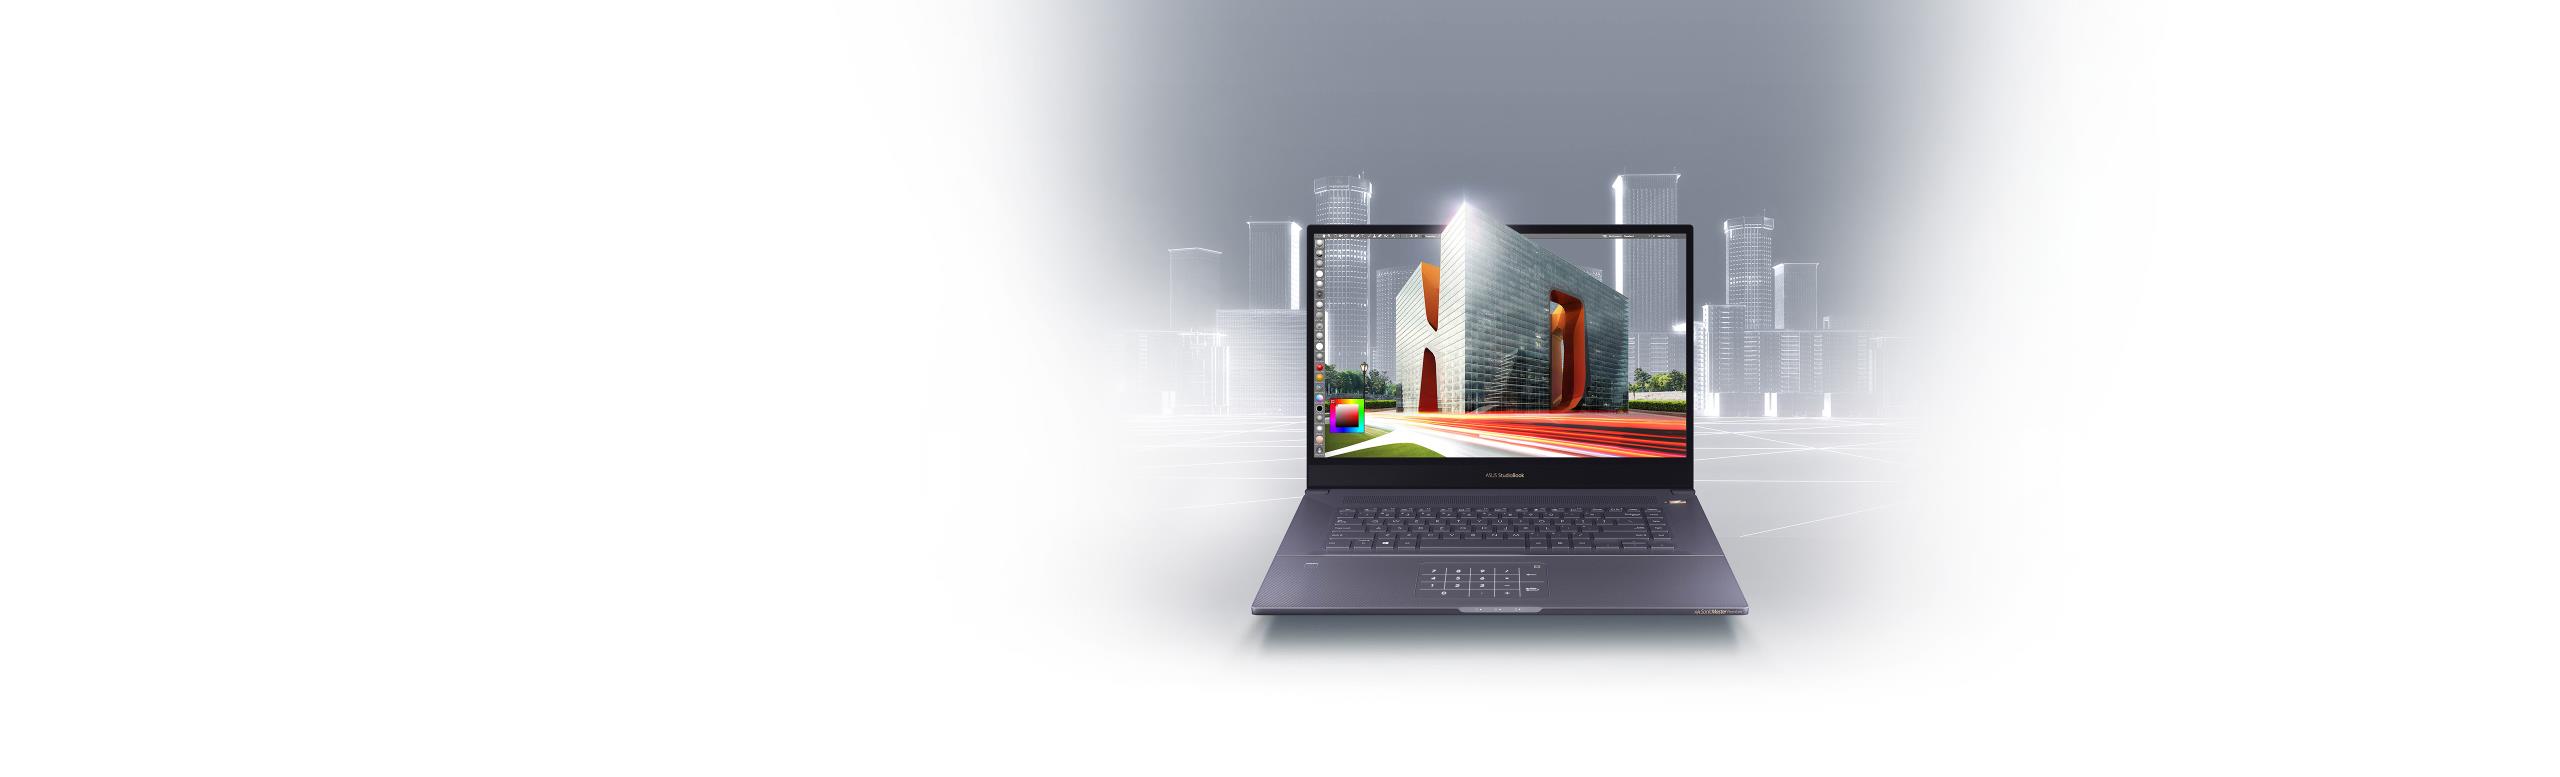 ProArt-StudioBook-Pro-17-W700